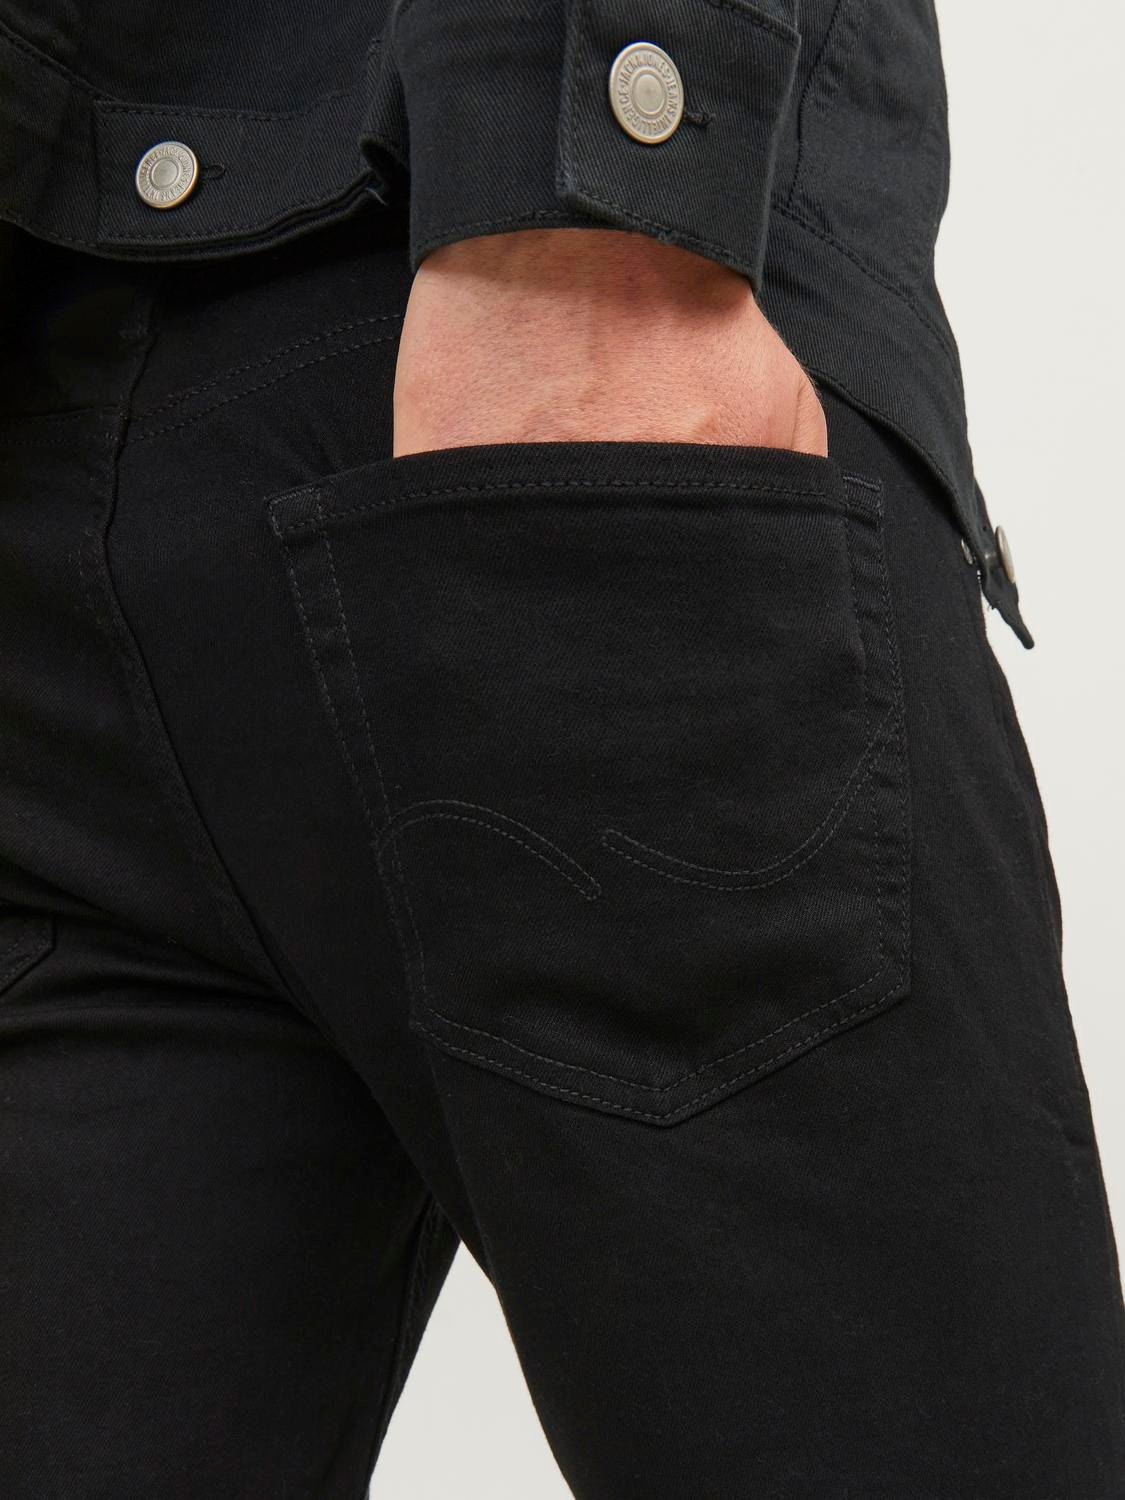 Jack & Jones JJIMIKE JJORIGINAL MF 816 Jeans tapered fit -Black Denim - 12148920